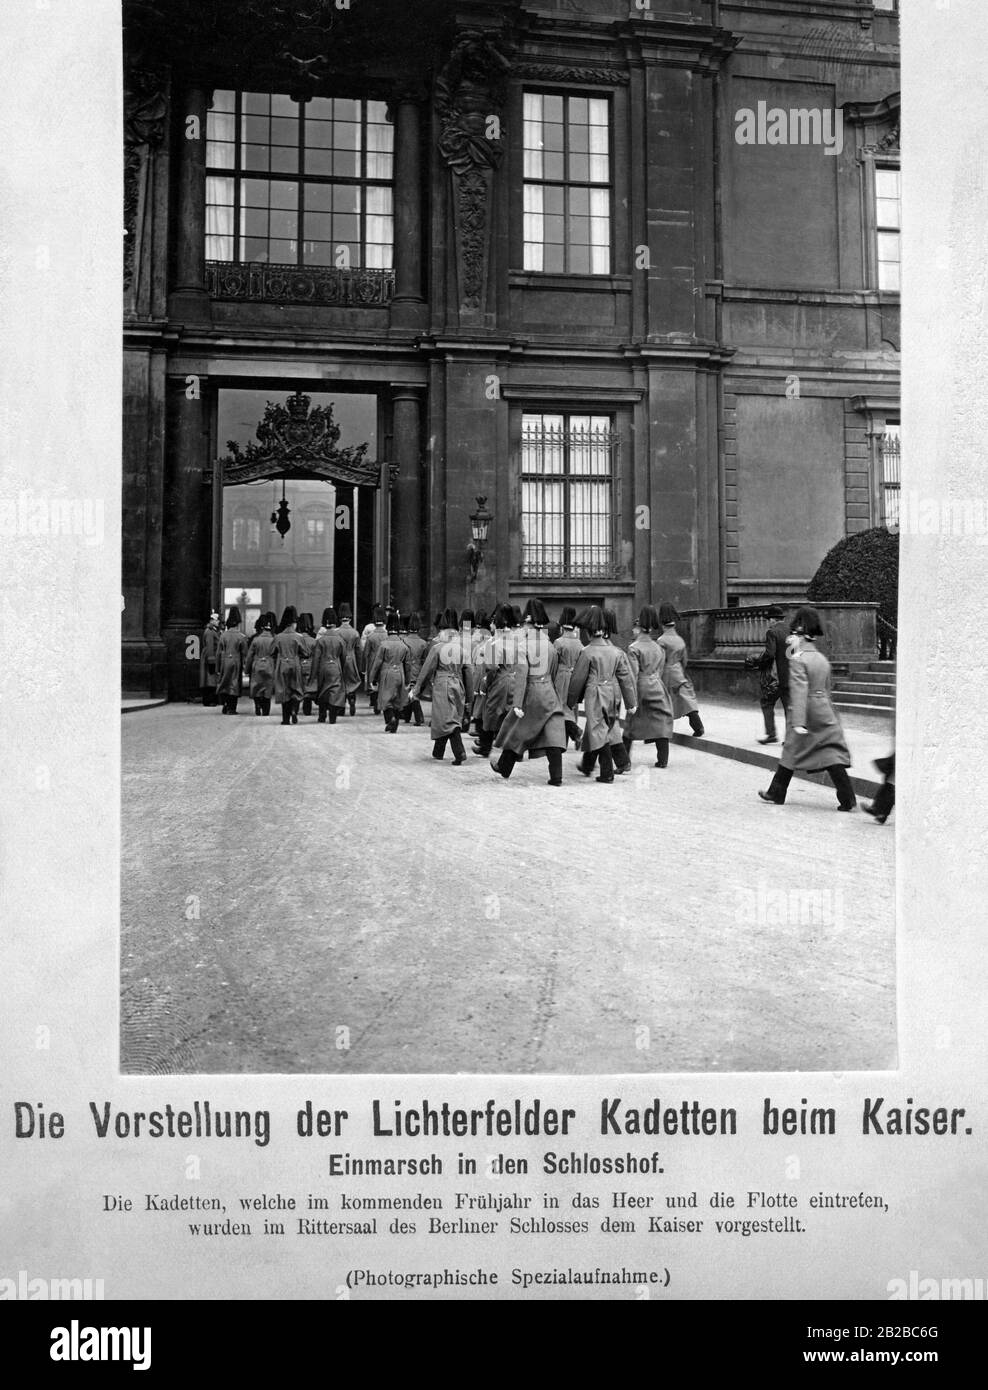 Un groupe d'élèves de cadets de Berlin-Lichterfelde qui entrent au Palais Royal de Berlin. Ils sont accueillis dans la salle des Chevaliers de l'empereur Guillaume II, car ils rejoindront la flotte ou l'armée impériale l'année prochaine. Banque D'Images